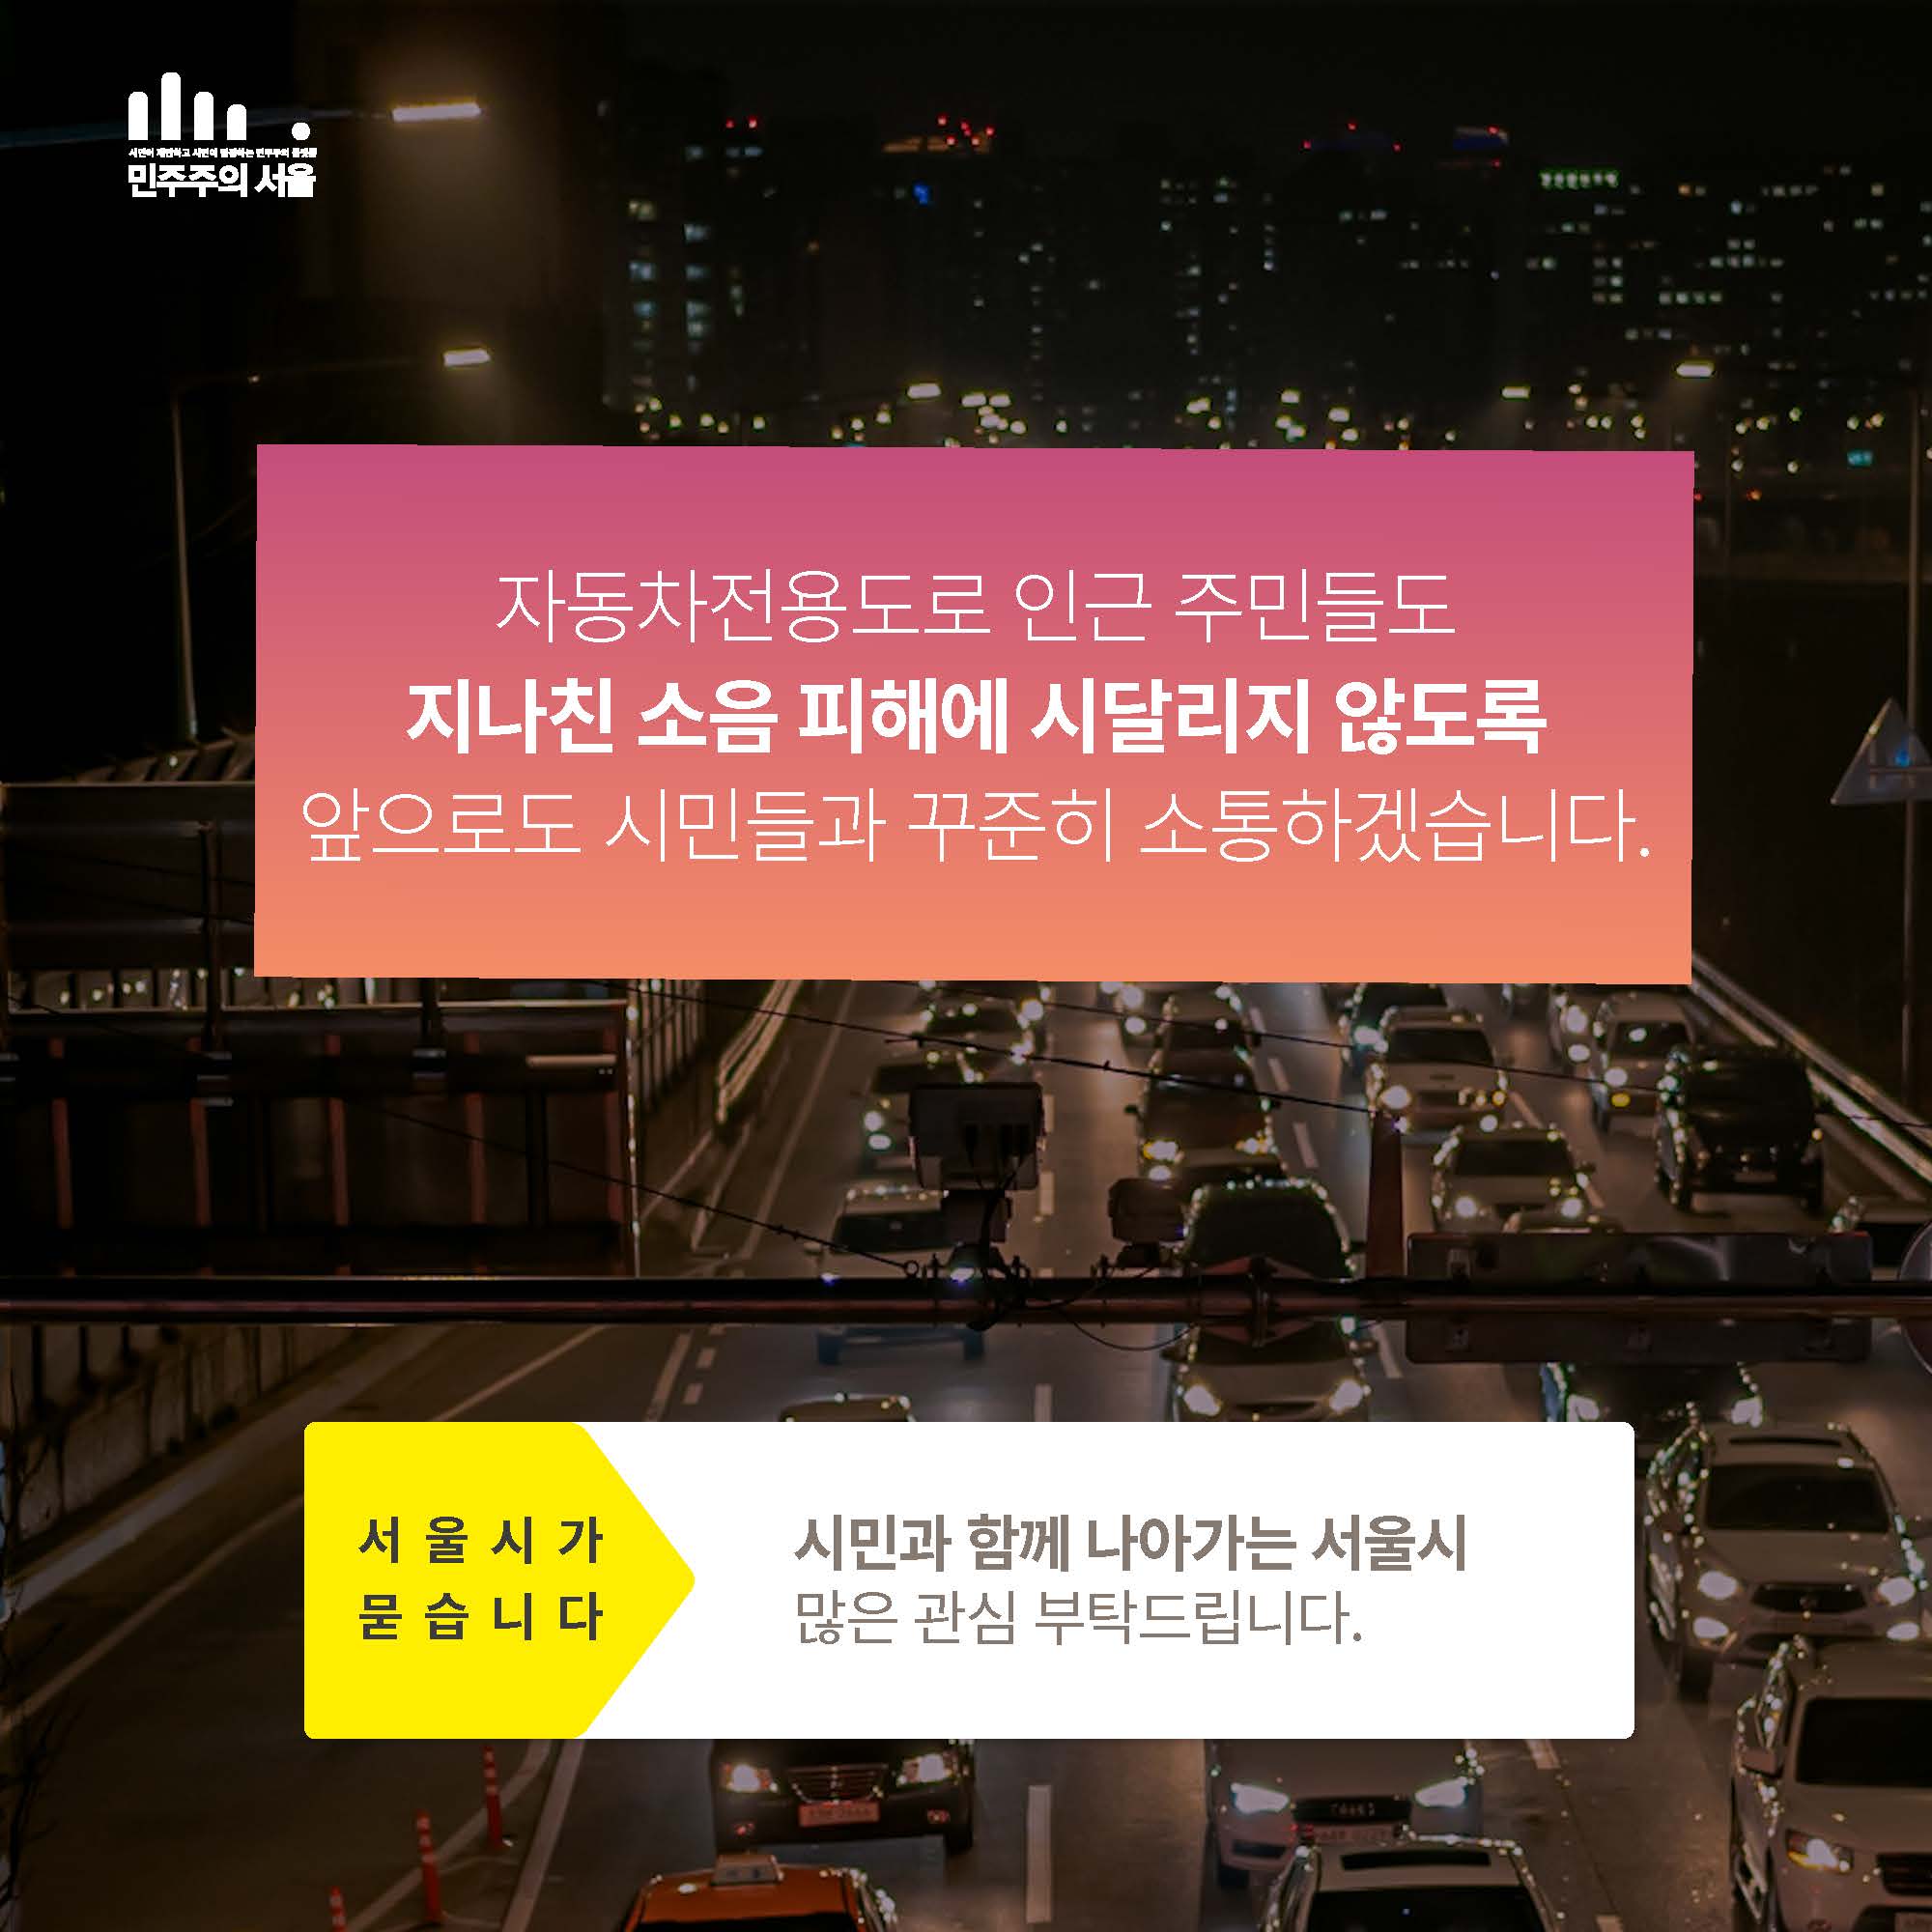 시민이 제안하고 시민이 결정하는 민주주의 플랫폼  민주주의서울  자동차전용도로 인근 주민들도 지나친 소음 피해에 시달리지 않도록 앞으로도 시민들과 꾸준히 소통하겠습니다. 서울시가 묻습니다 시민과 함께 나아가는 서울시 많은 관심 부탁 드립니다.